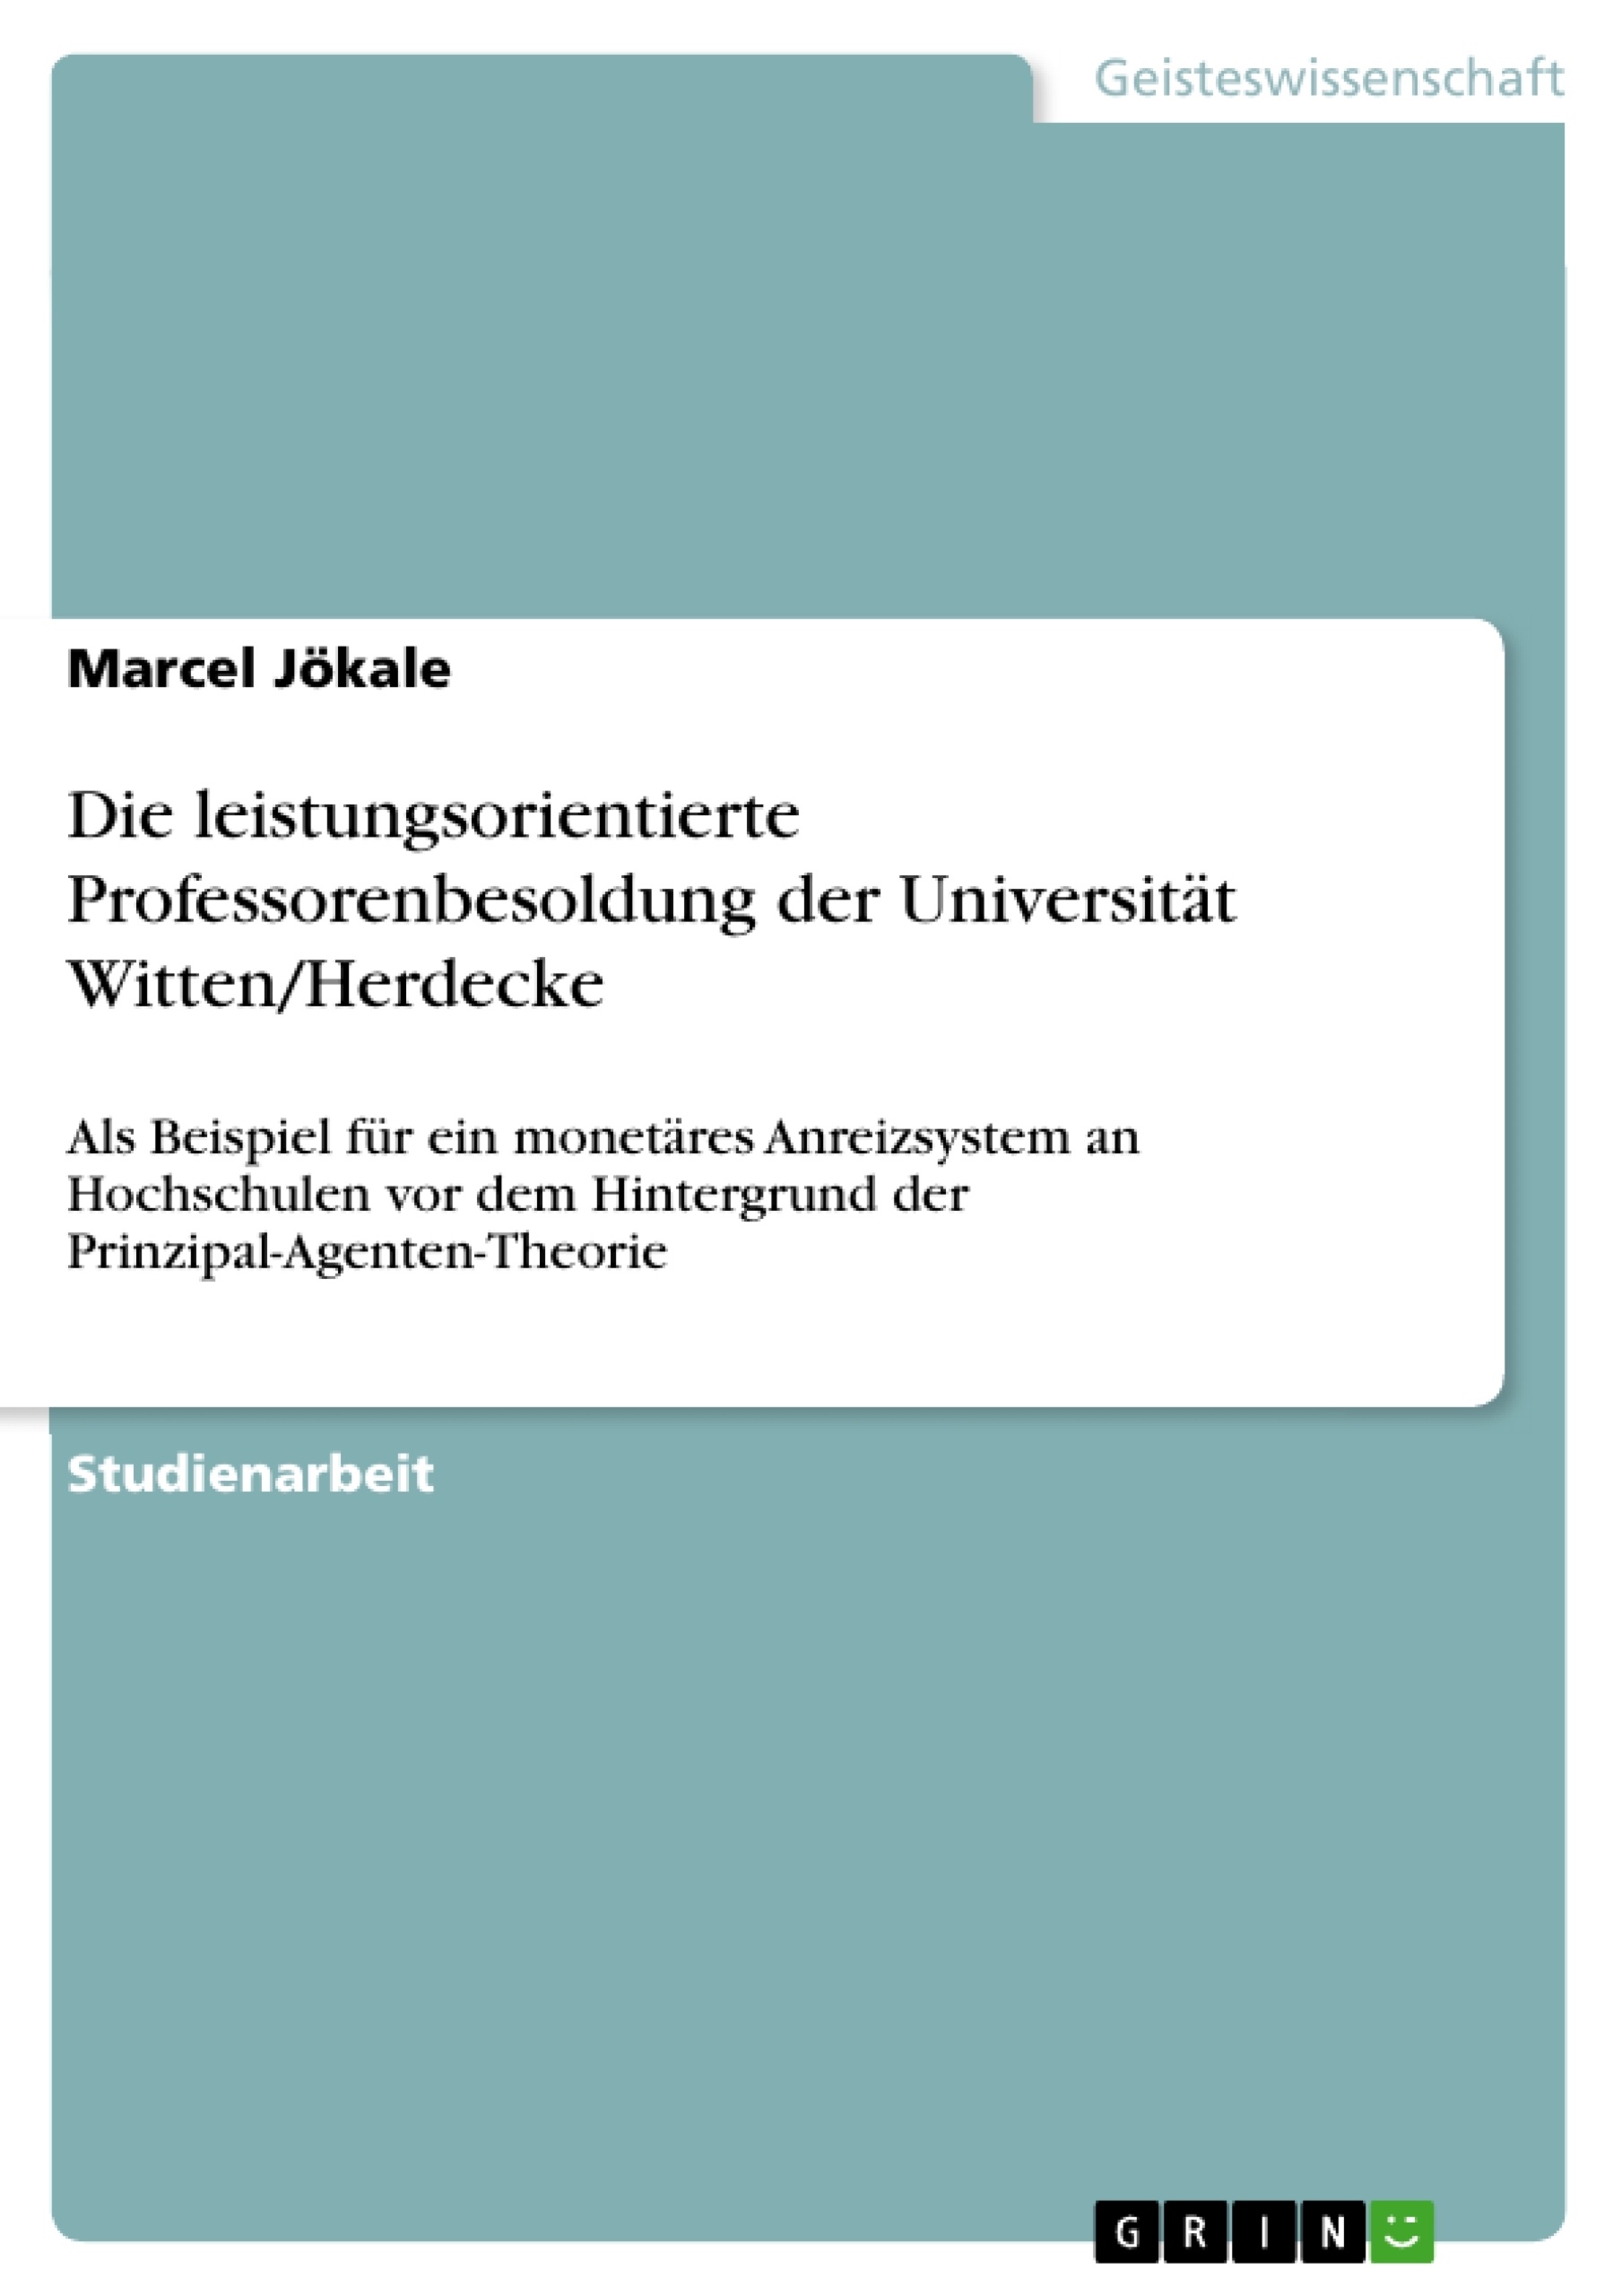 Titel: Die leistungsorientierte Professorenbesoldung der Universität Witten/Herdecke